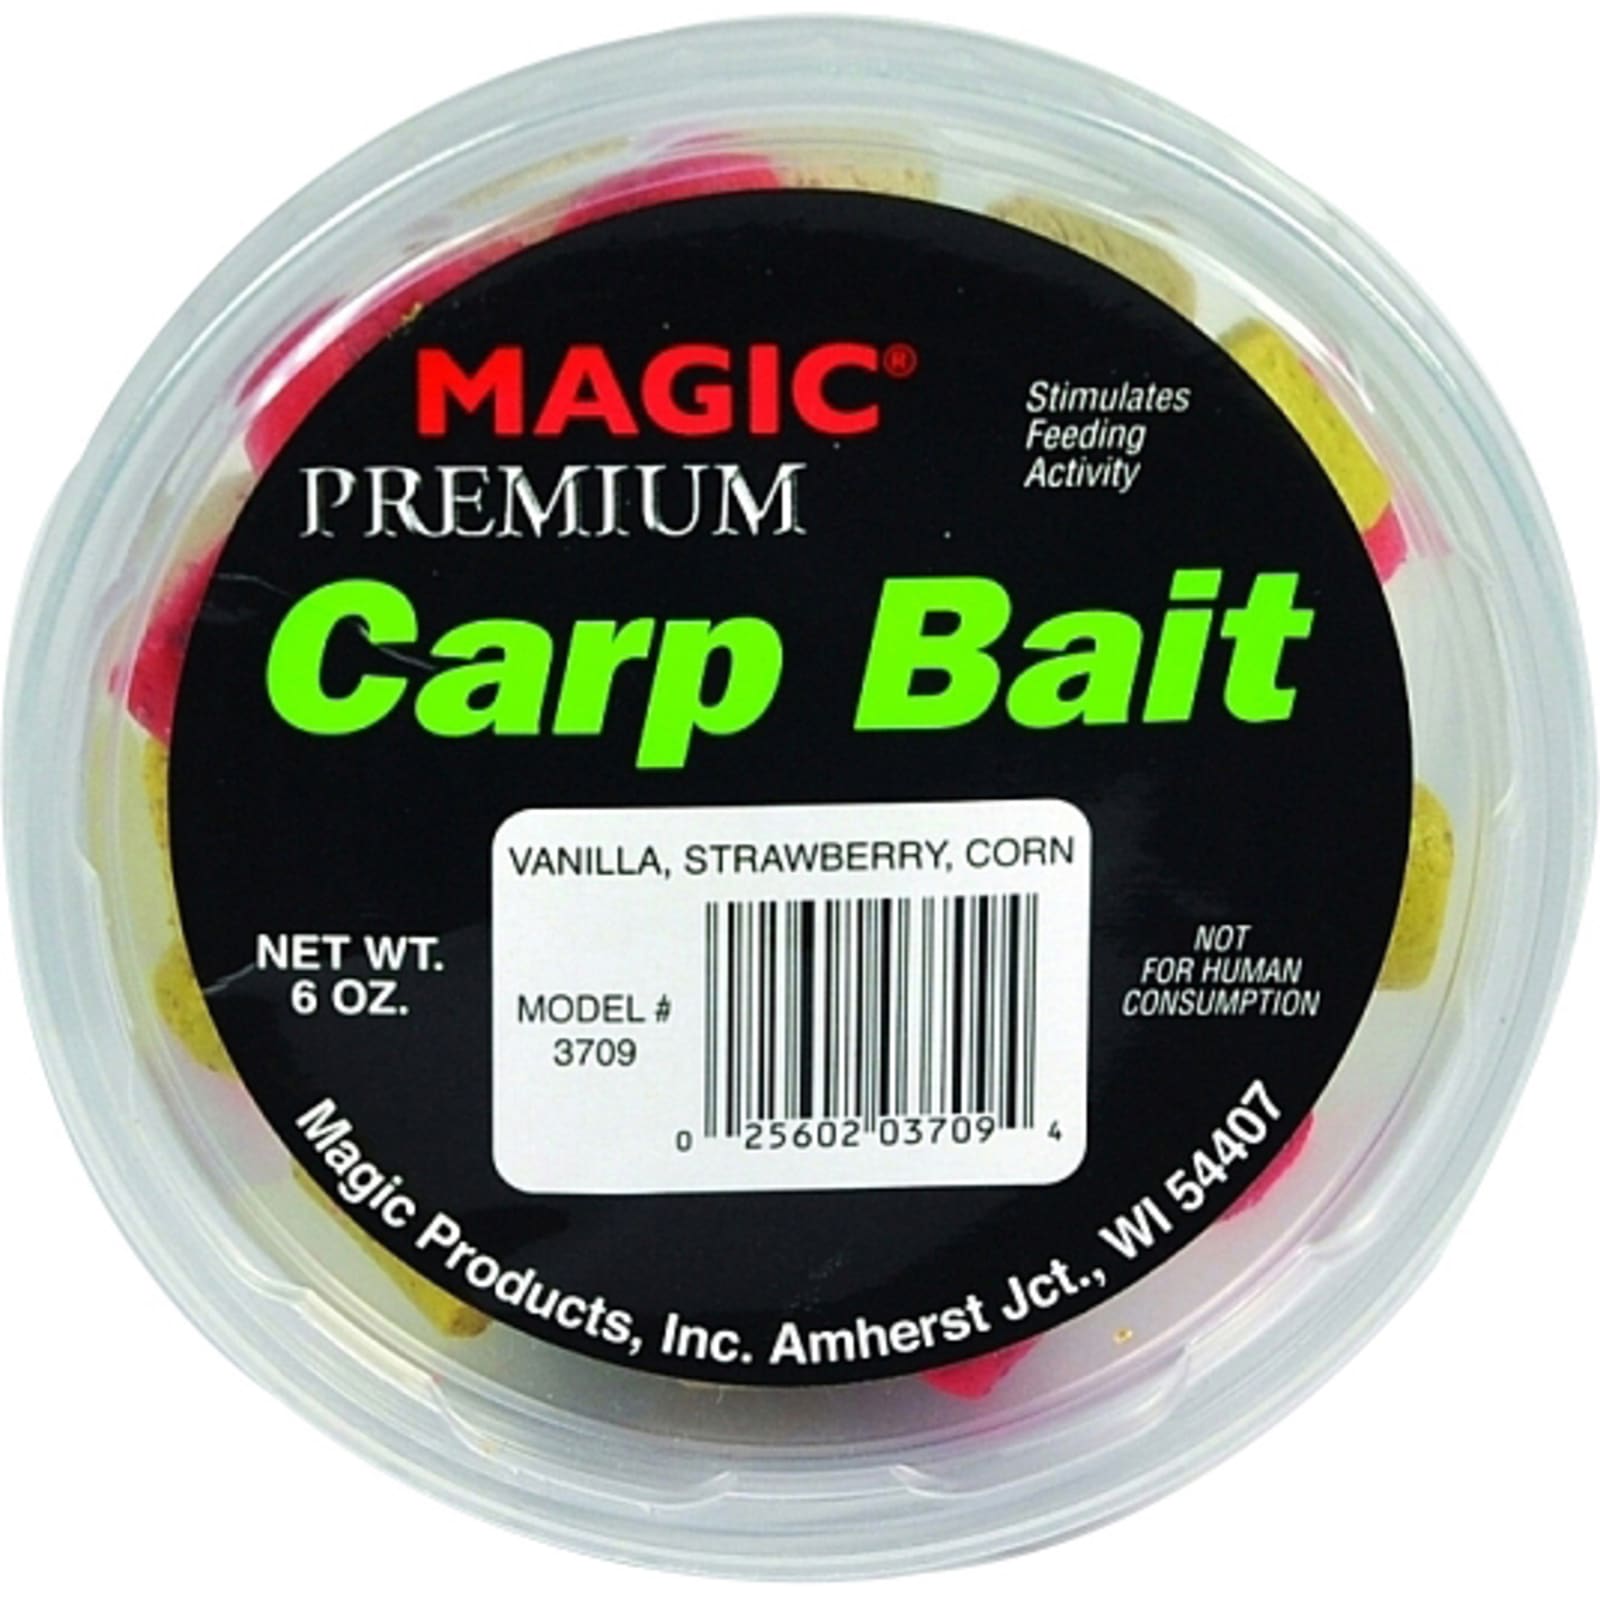 Premium Carp Bait Mixed Flavors by Magic at Fleet Farm